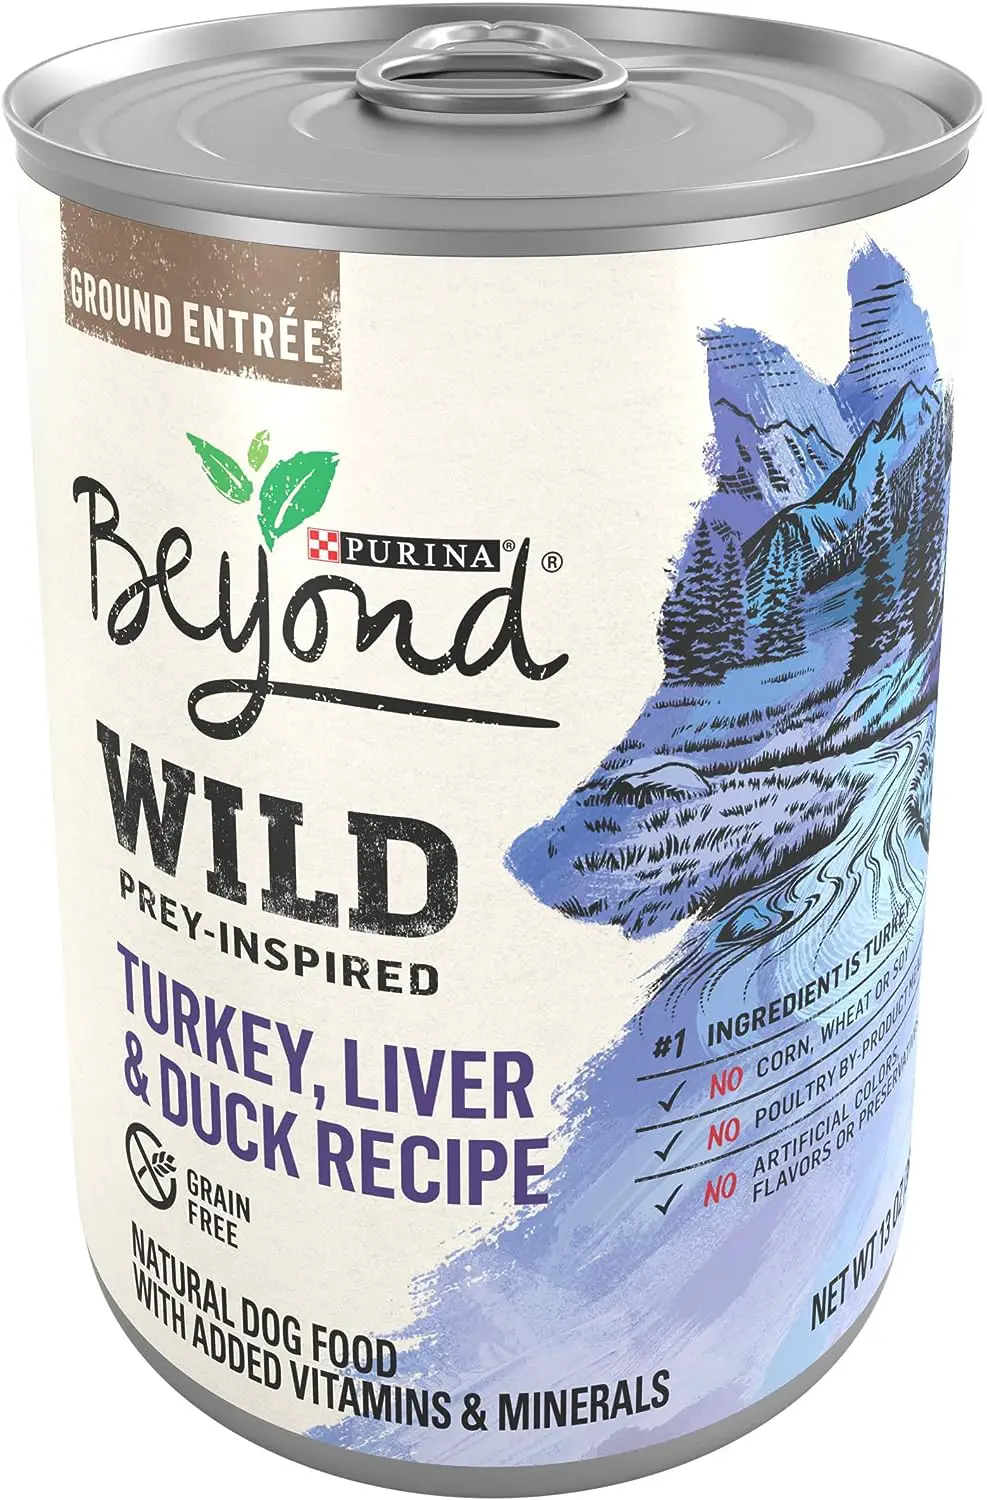 Purina Beyond Wild Prey-Inspired, Turkey, Liver, & Duck Recipe